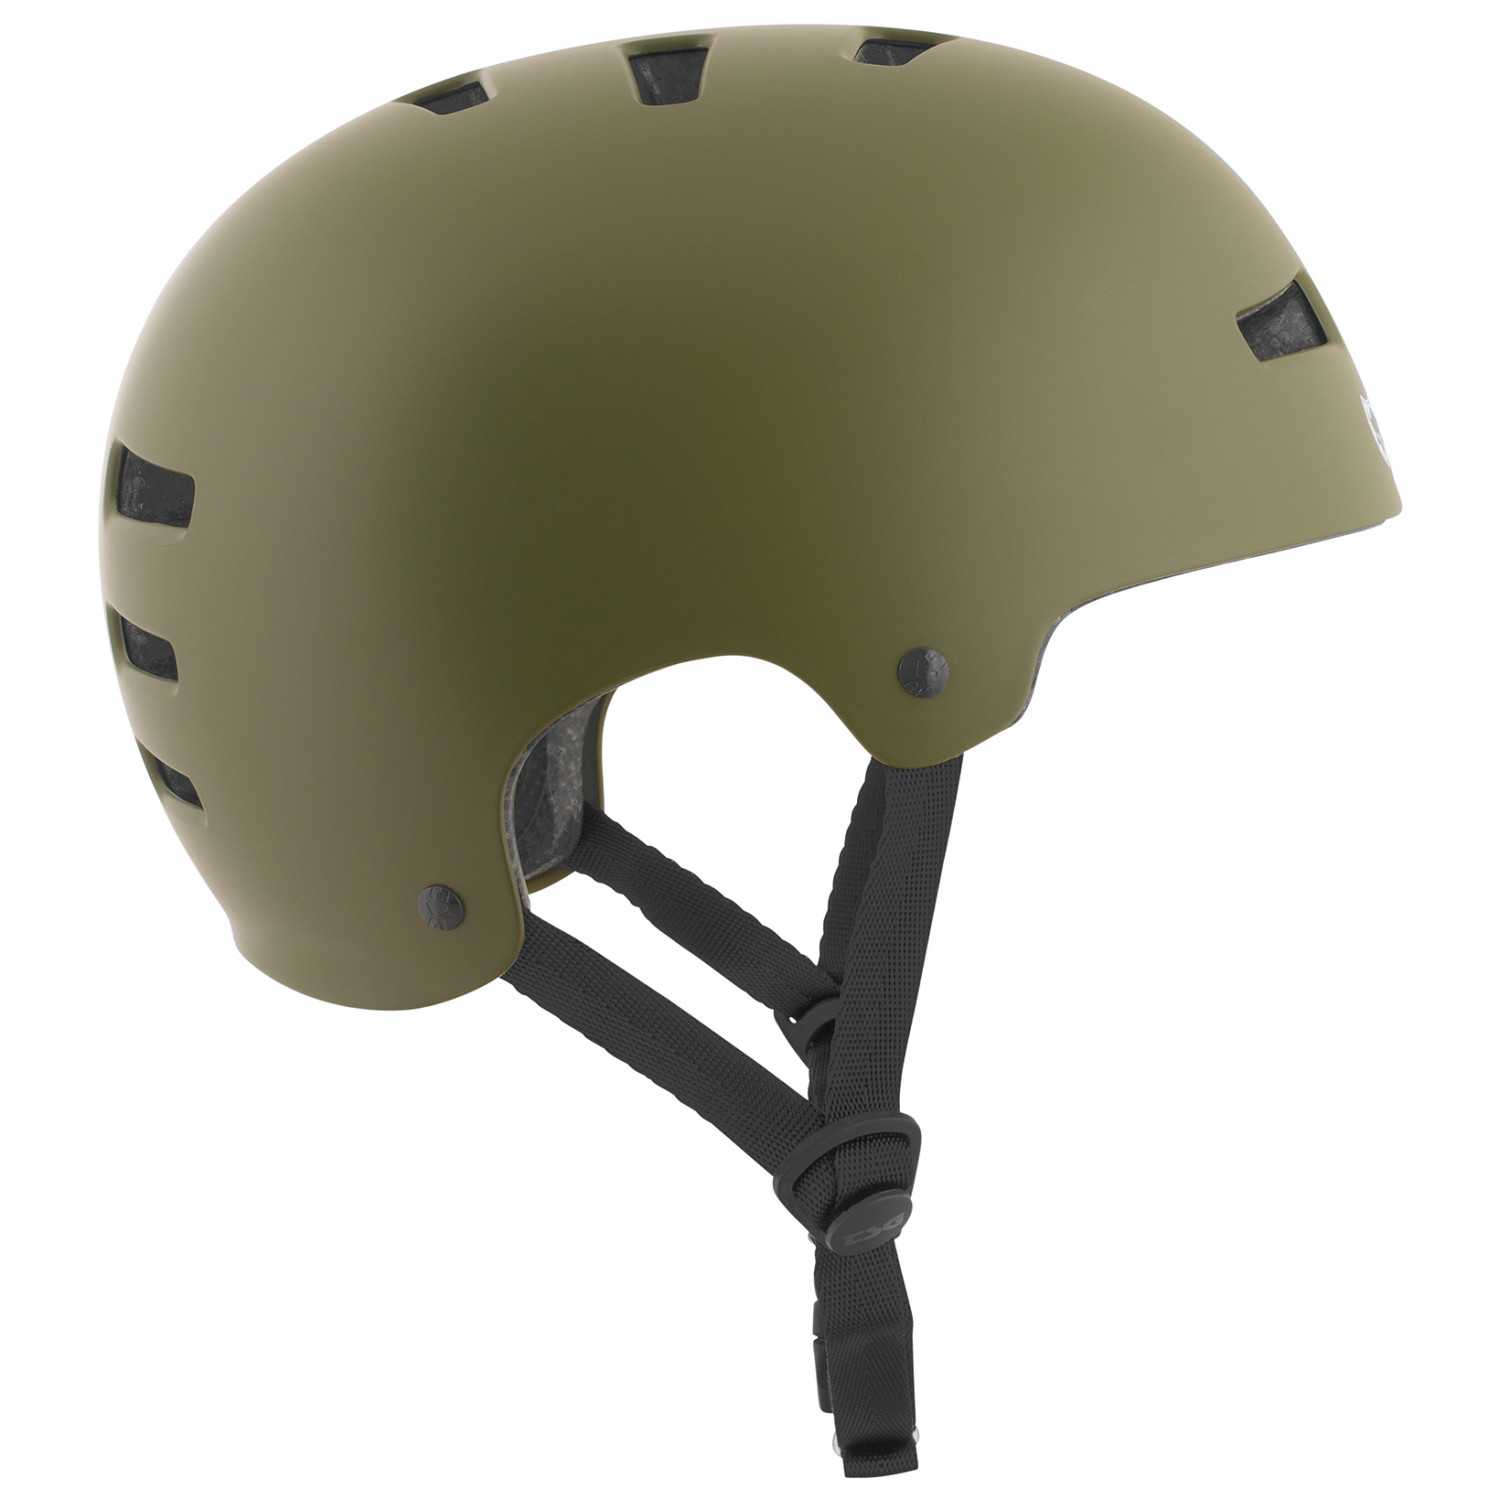 Велосипедный шлем Tsg Evolution Solid Color, цвет Satin Olive